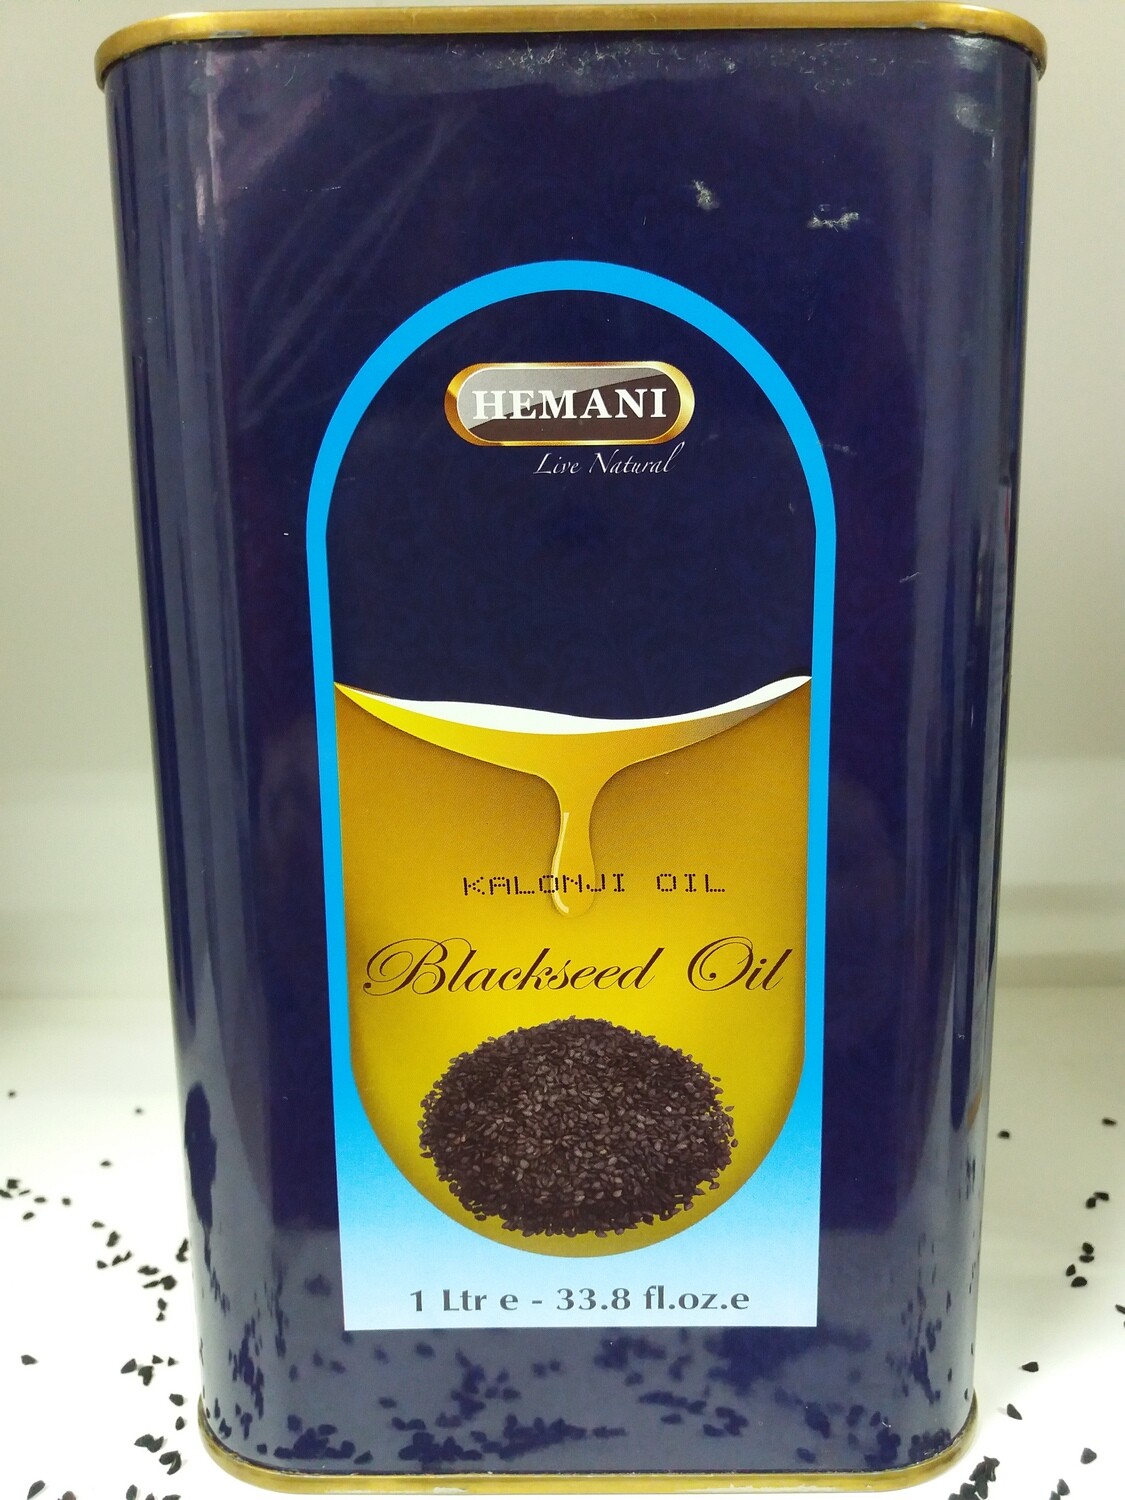 Производство масла черного тмина. Hemani Black Seed Oil. Черный тмин Хемани. Hemani масло черного тмина. Масло черного тмина Black Seed.